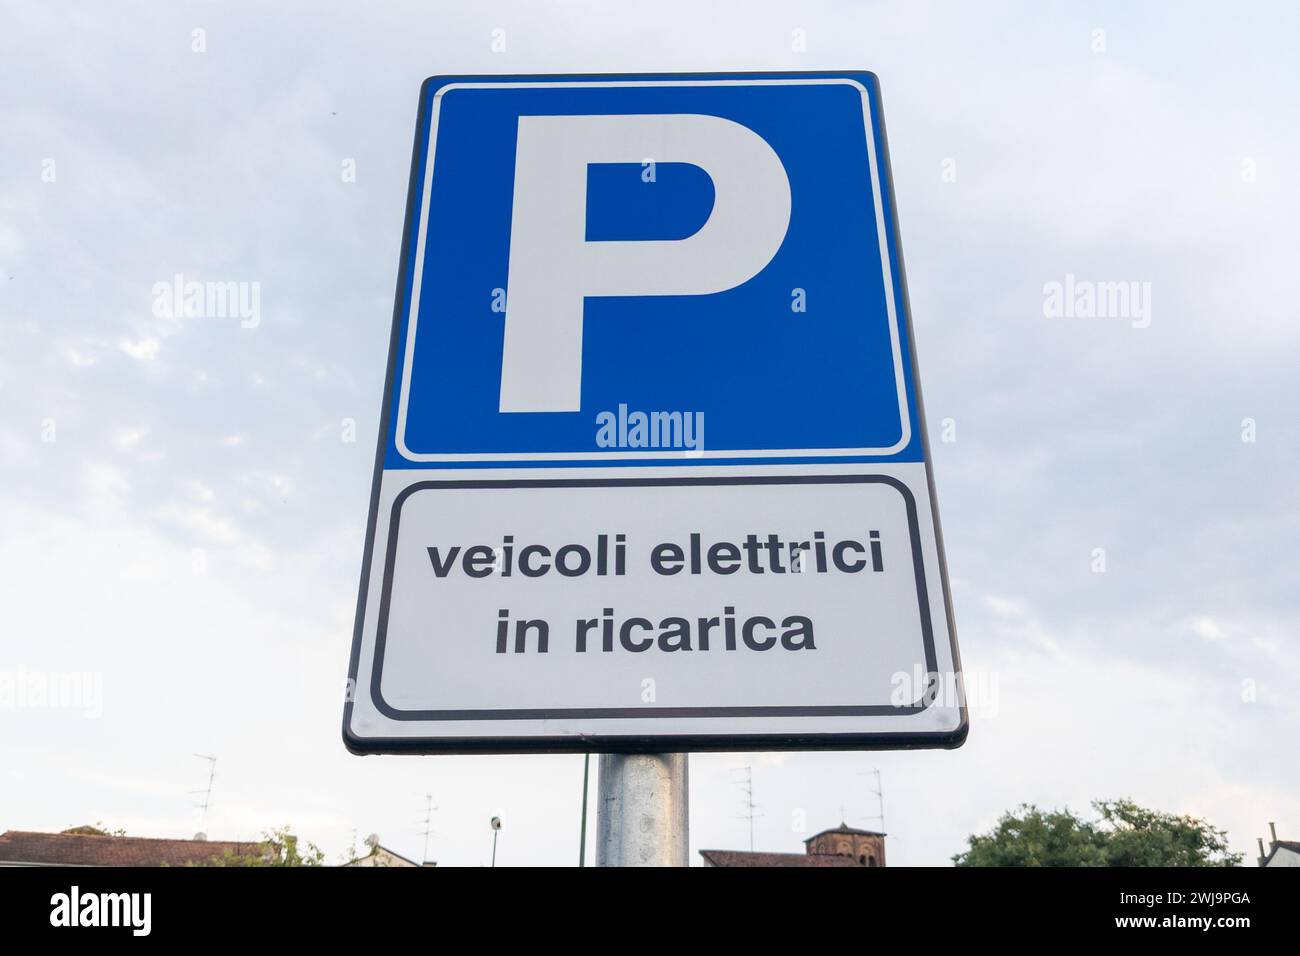 Parking veicoli elettrici in ricarica signe de texte italien signifie parking de véhicules électriques charge ev Station Signage Park lot pour voiture électrique dans ch Banque D'Images